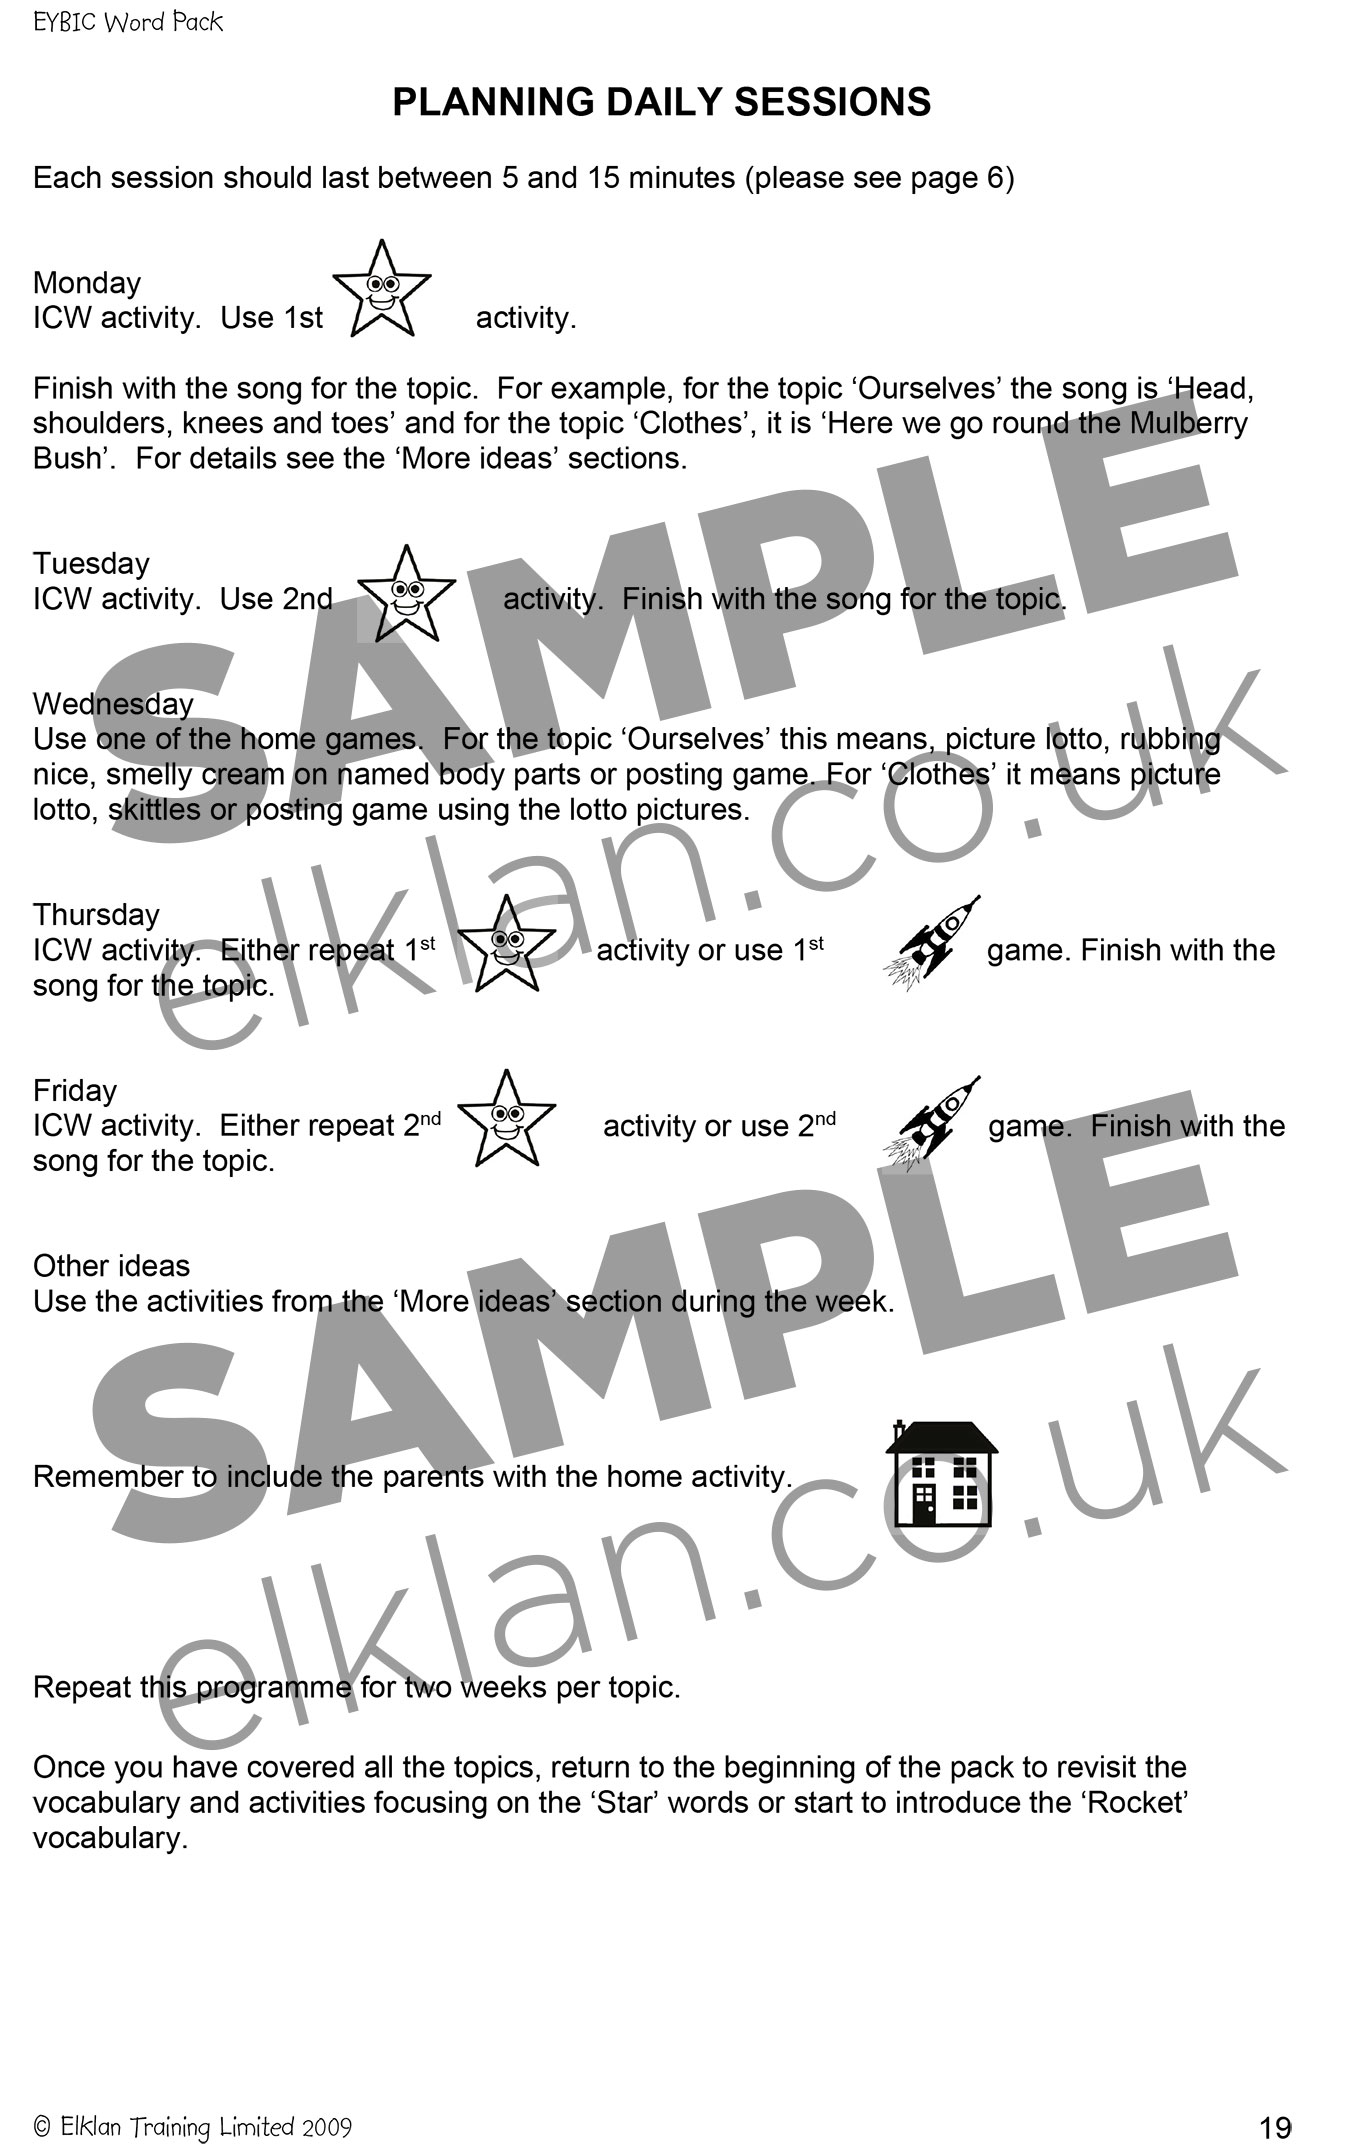 EYBIC Word Pack Manual sample image